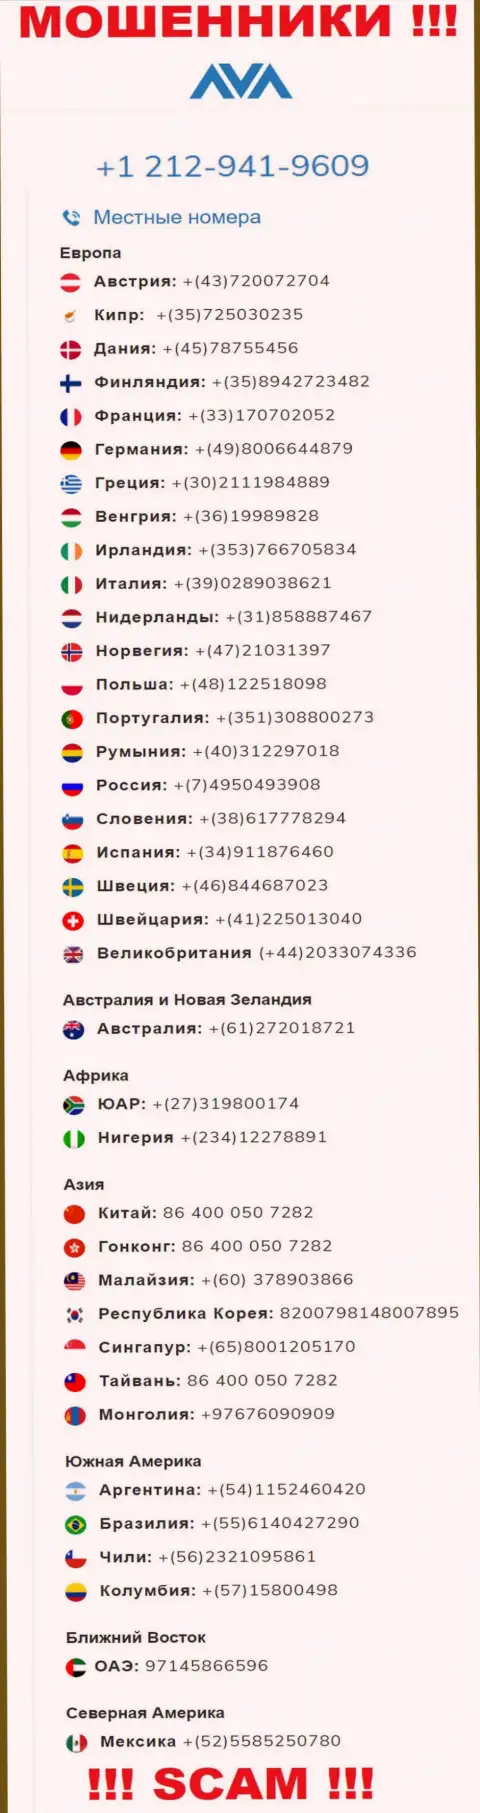 Мошенники из AvaTrade Ru, с целью развести лохов на средства, трезвонят с различных номеров